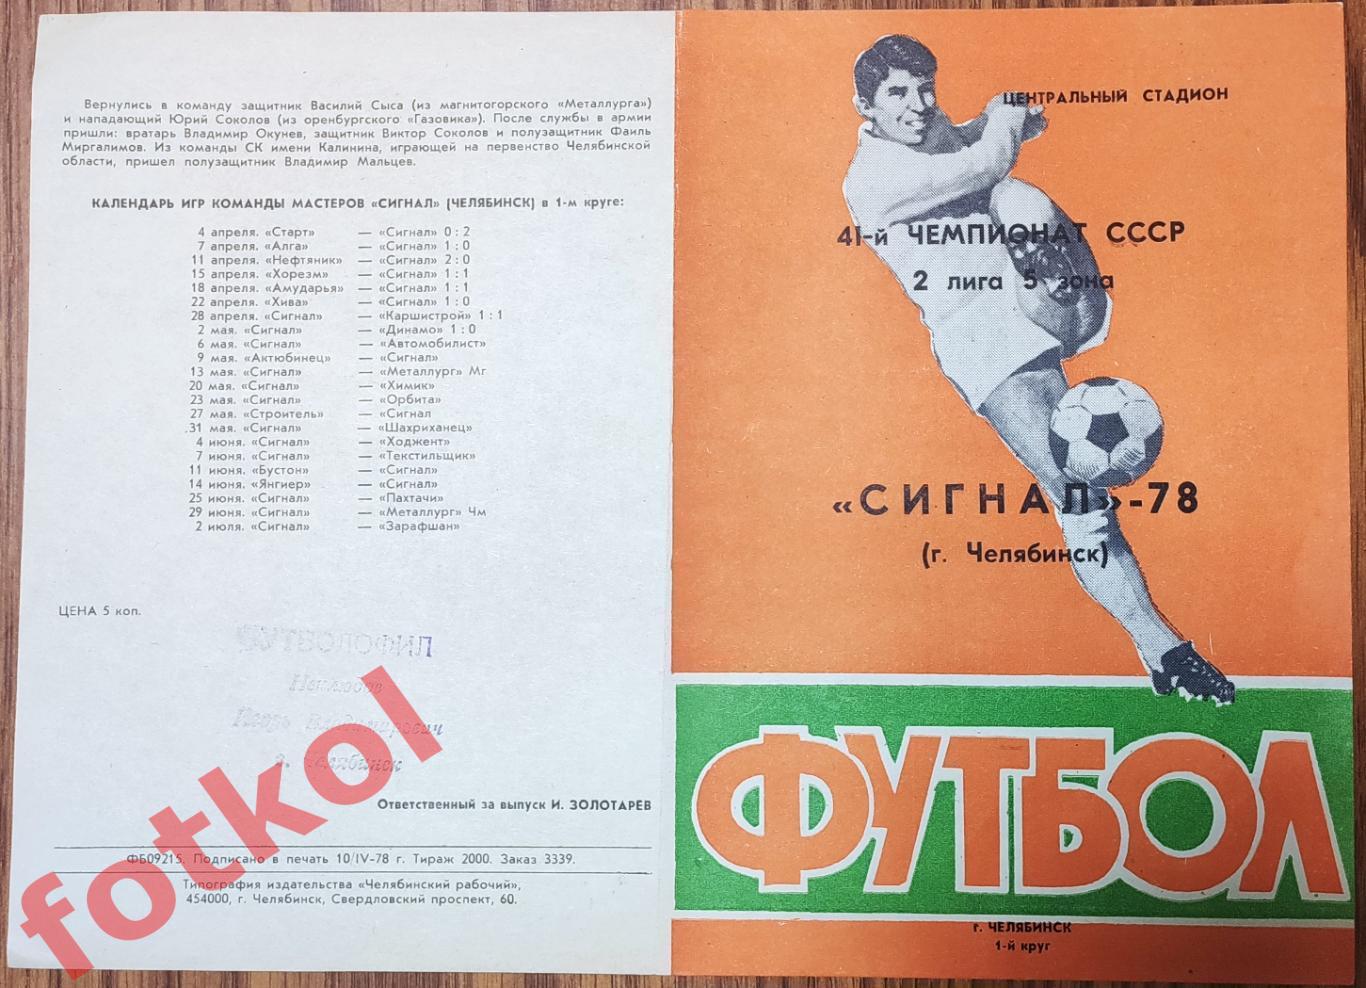 ЧЕЛЯБИНСК Сигнал - 1978 1 круг Фото игроков